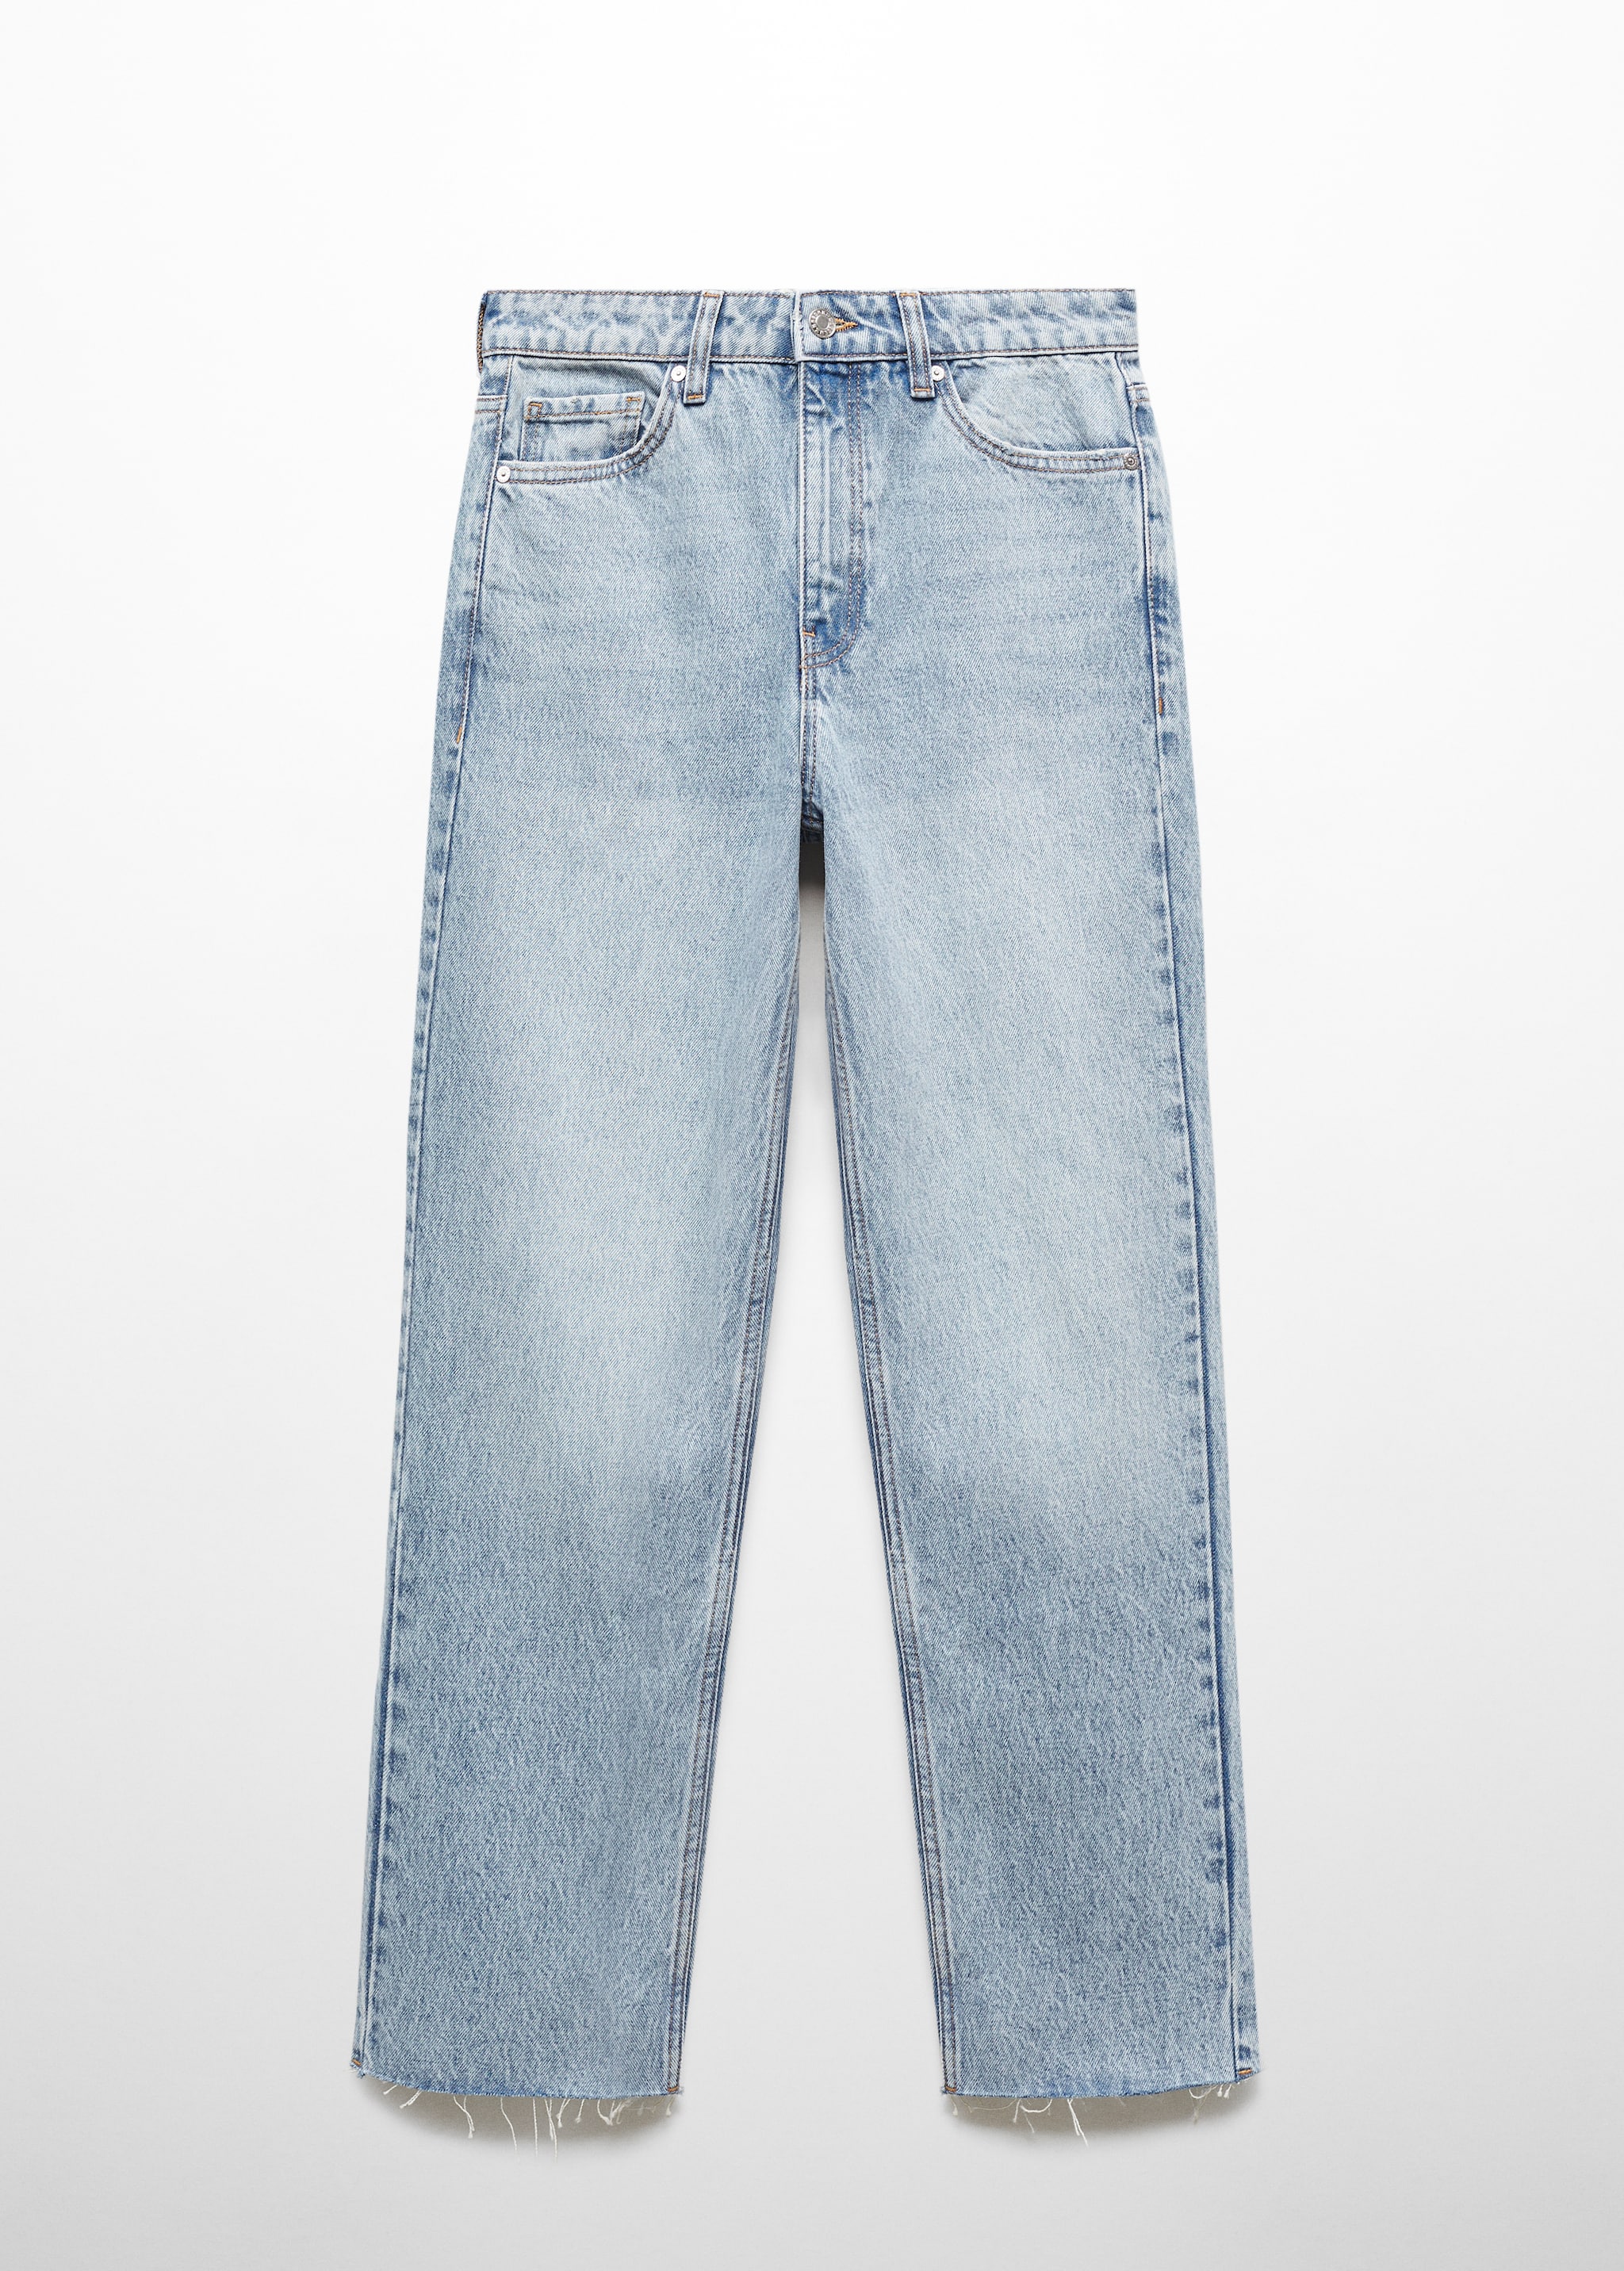 جينز قصير مستقيم - منتج دون نموذج